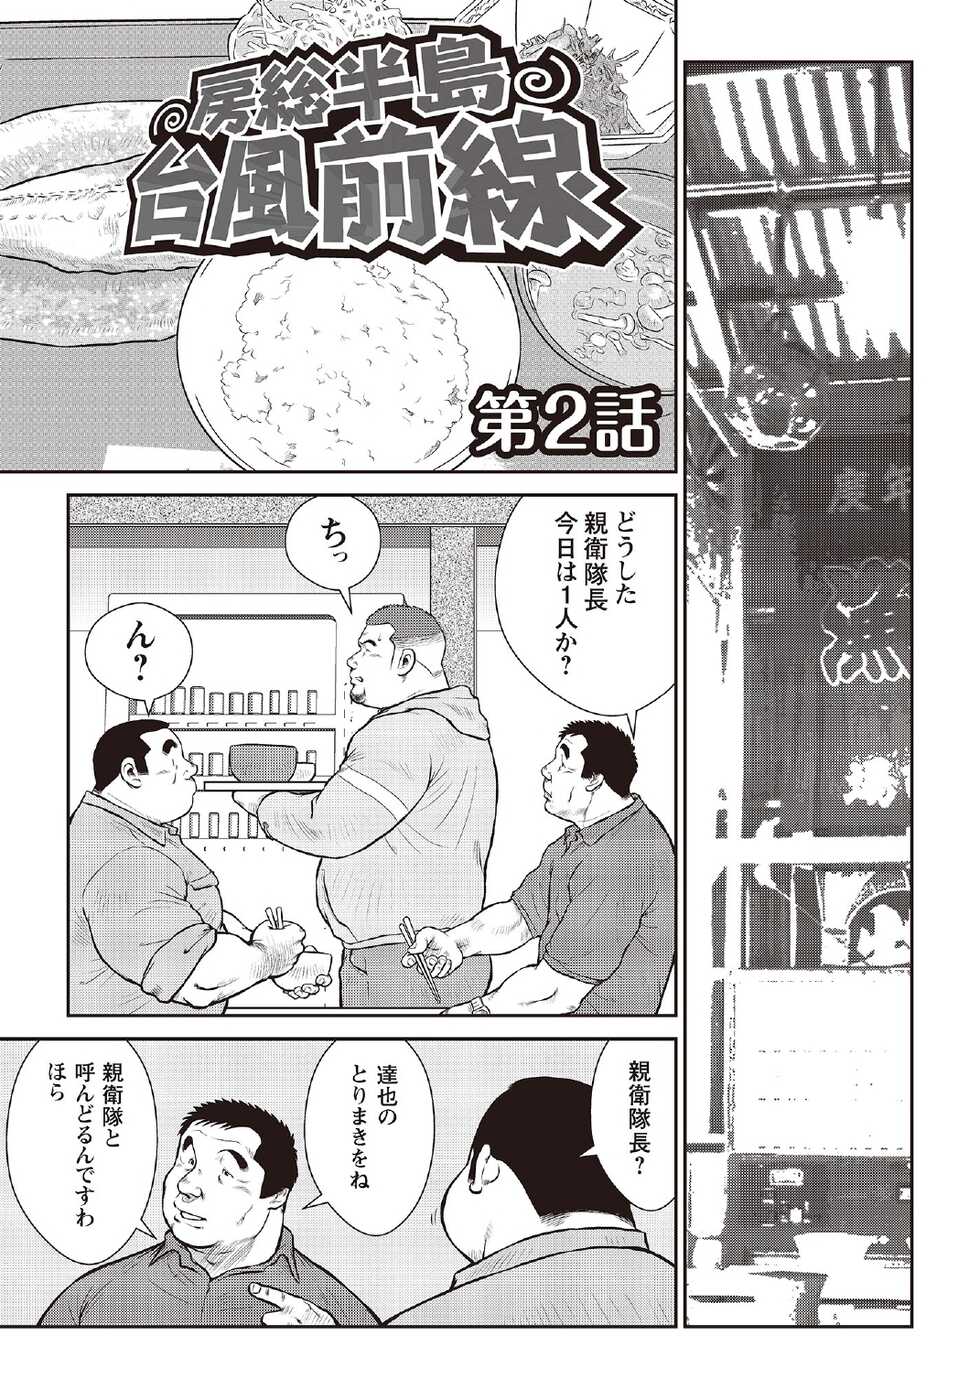 [Ebisubashi Seizou] Ebisubashi Seizou Tanpen Manga Shuu 2 Fuuun! Danshi Ryou [Bunsatsuban] PART 2 Bousou Hantou Taifuu Zensen Ch. 1 + Ch. 2 [Digital] - Page 27